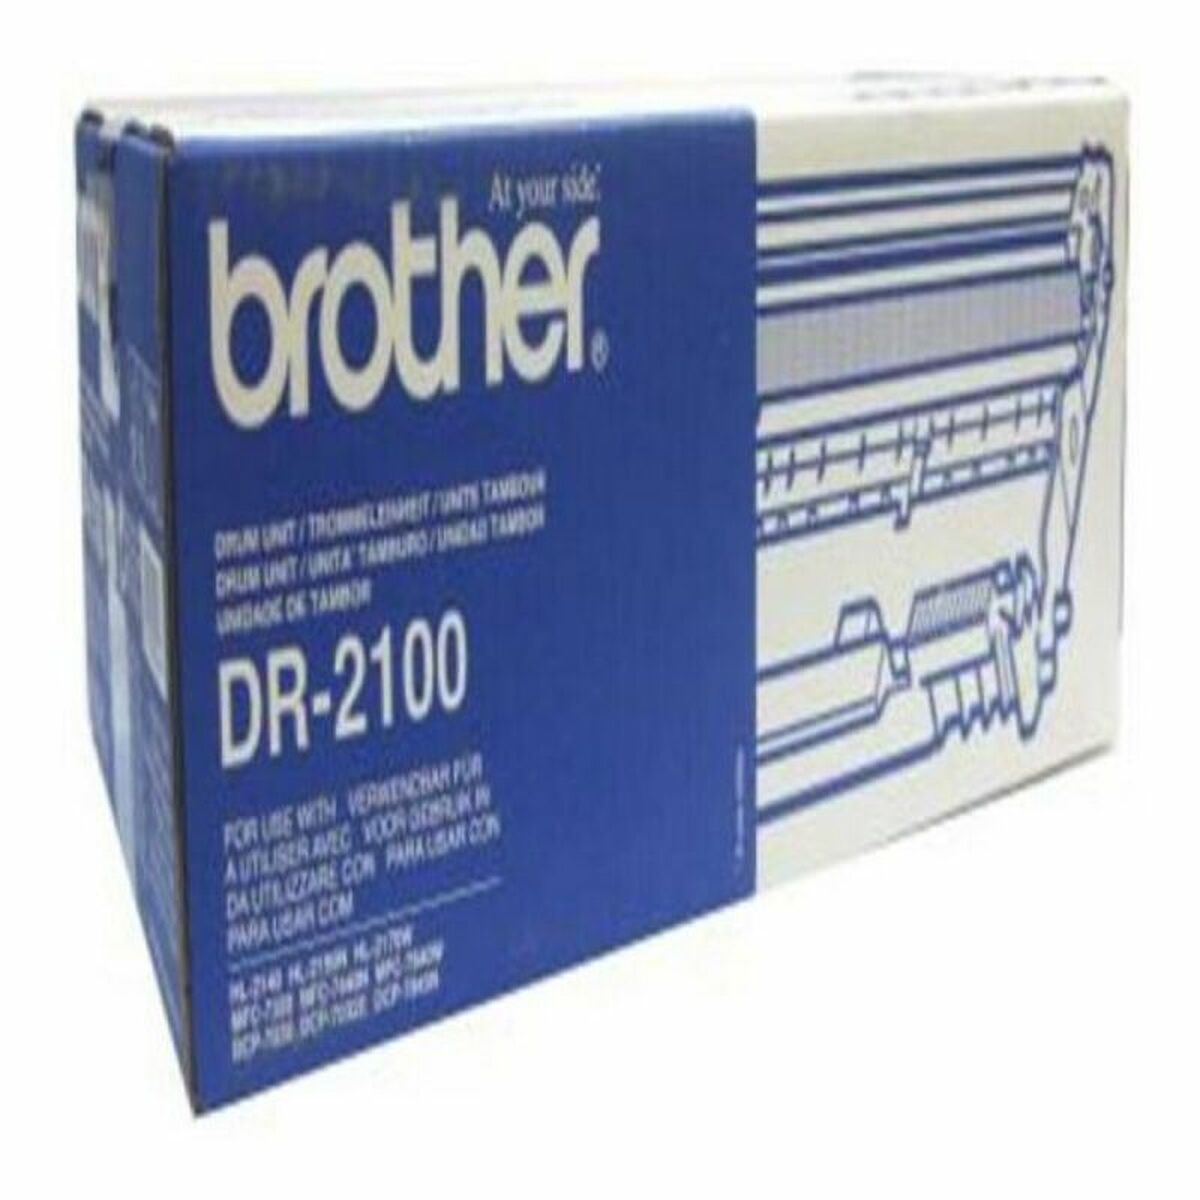 DR-2100 schwarz BROTHER Trommel (DR-2100)